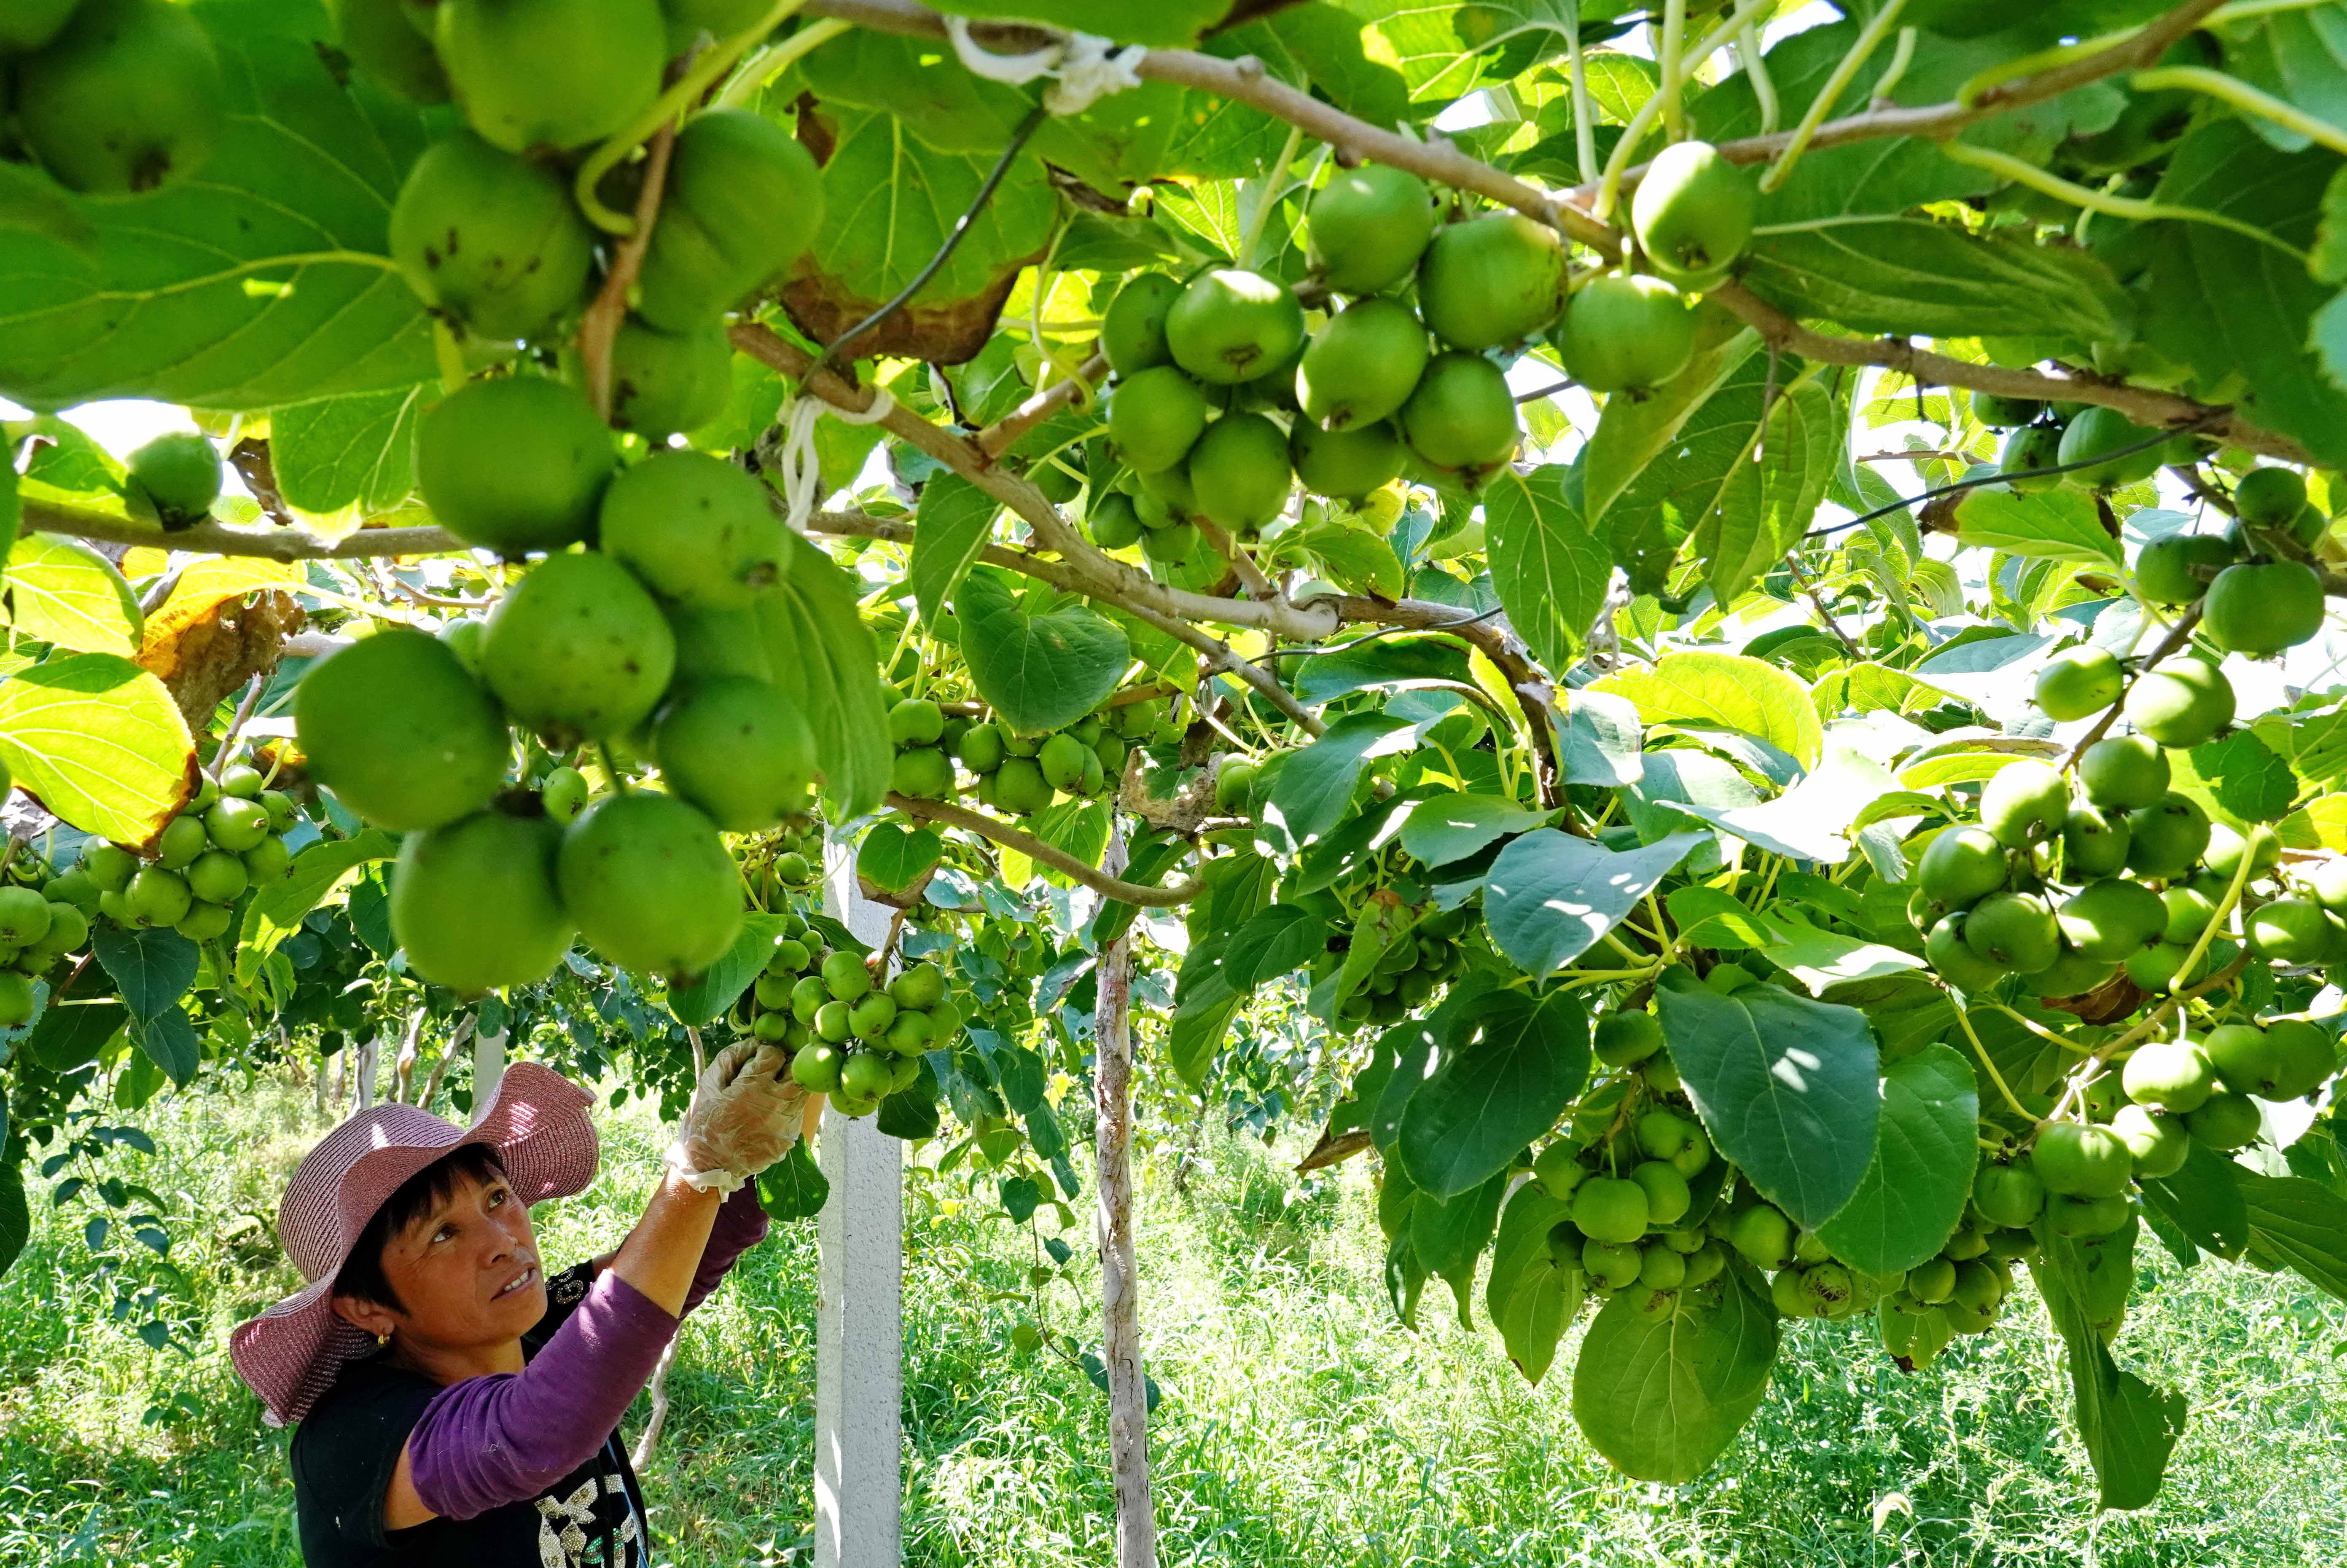 9月1日,在滦南县倴城镇一家生态农业公司的果园,工人在采摘软枣猕猴桃